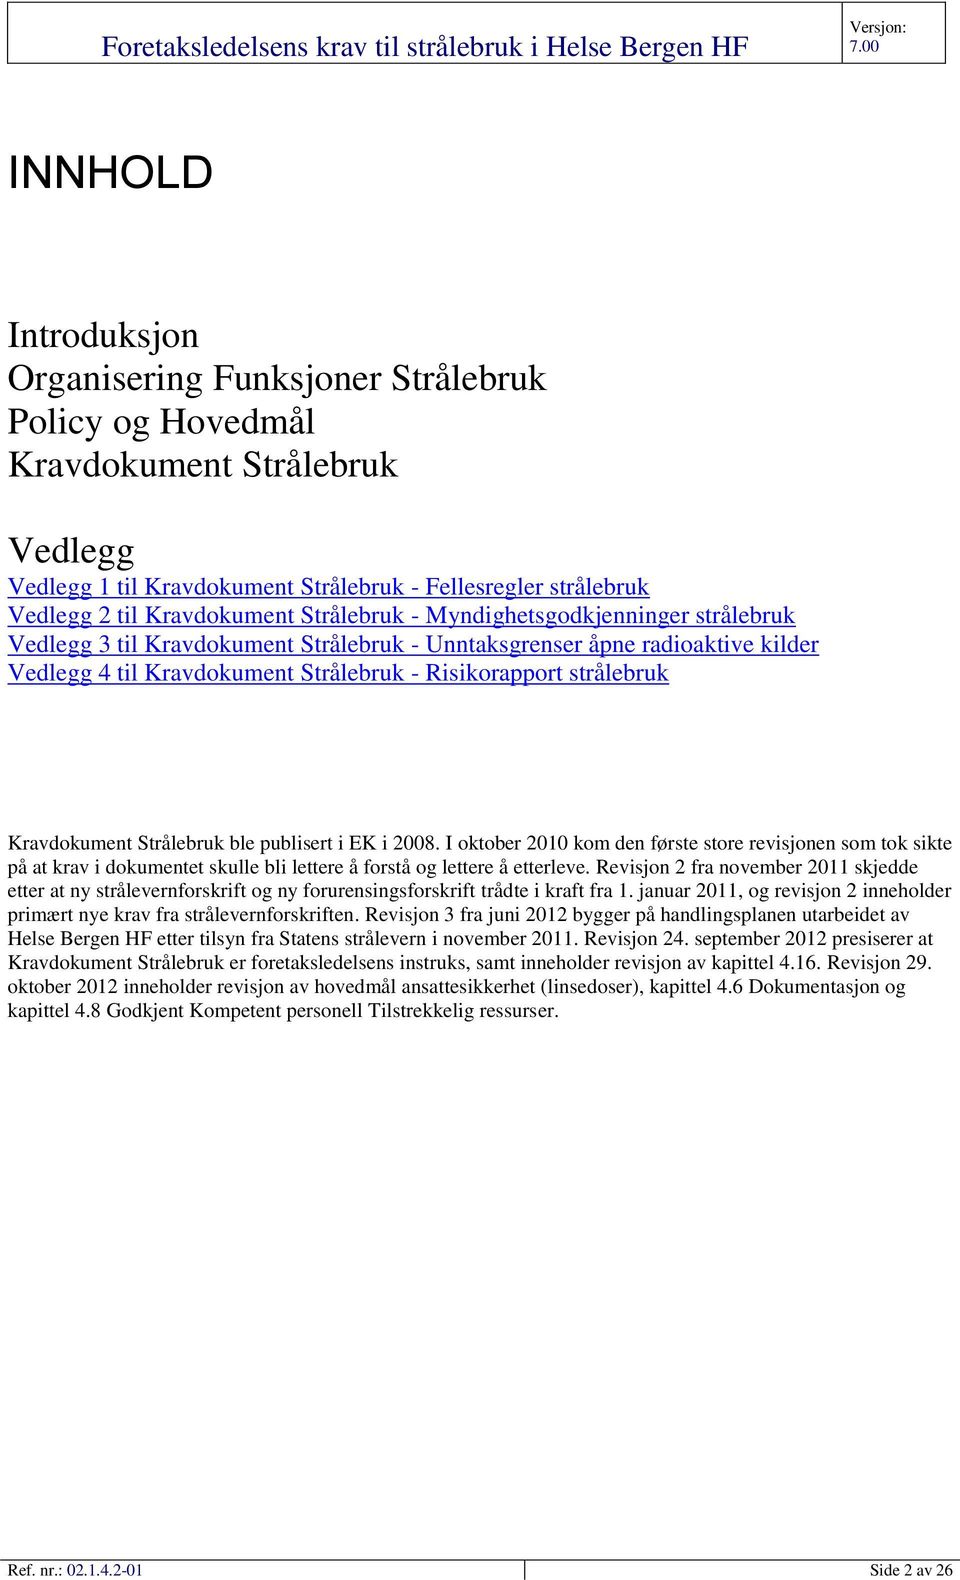 Kravdokument Strålebruk ble publisert i EK i 2008. I oktober 2010 kom den første store revisjonen som tok sikte på at krav i dokumentet skulle bli lettere å forstå og lettere å etterleve.